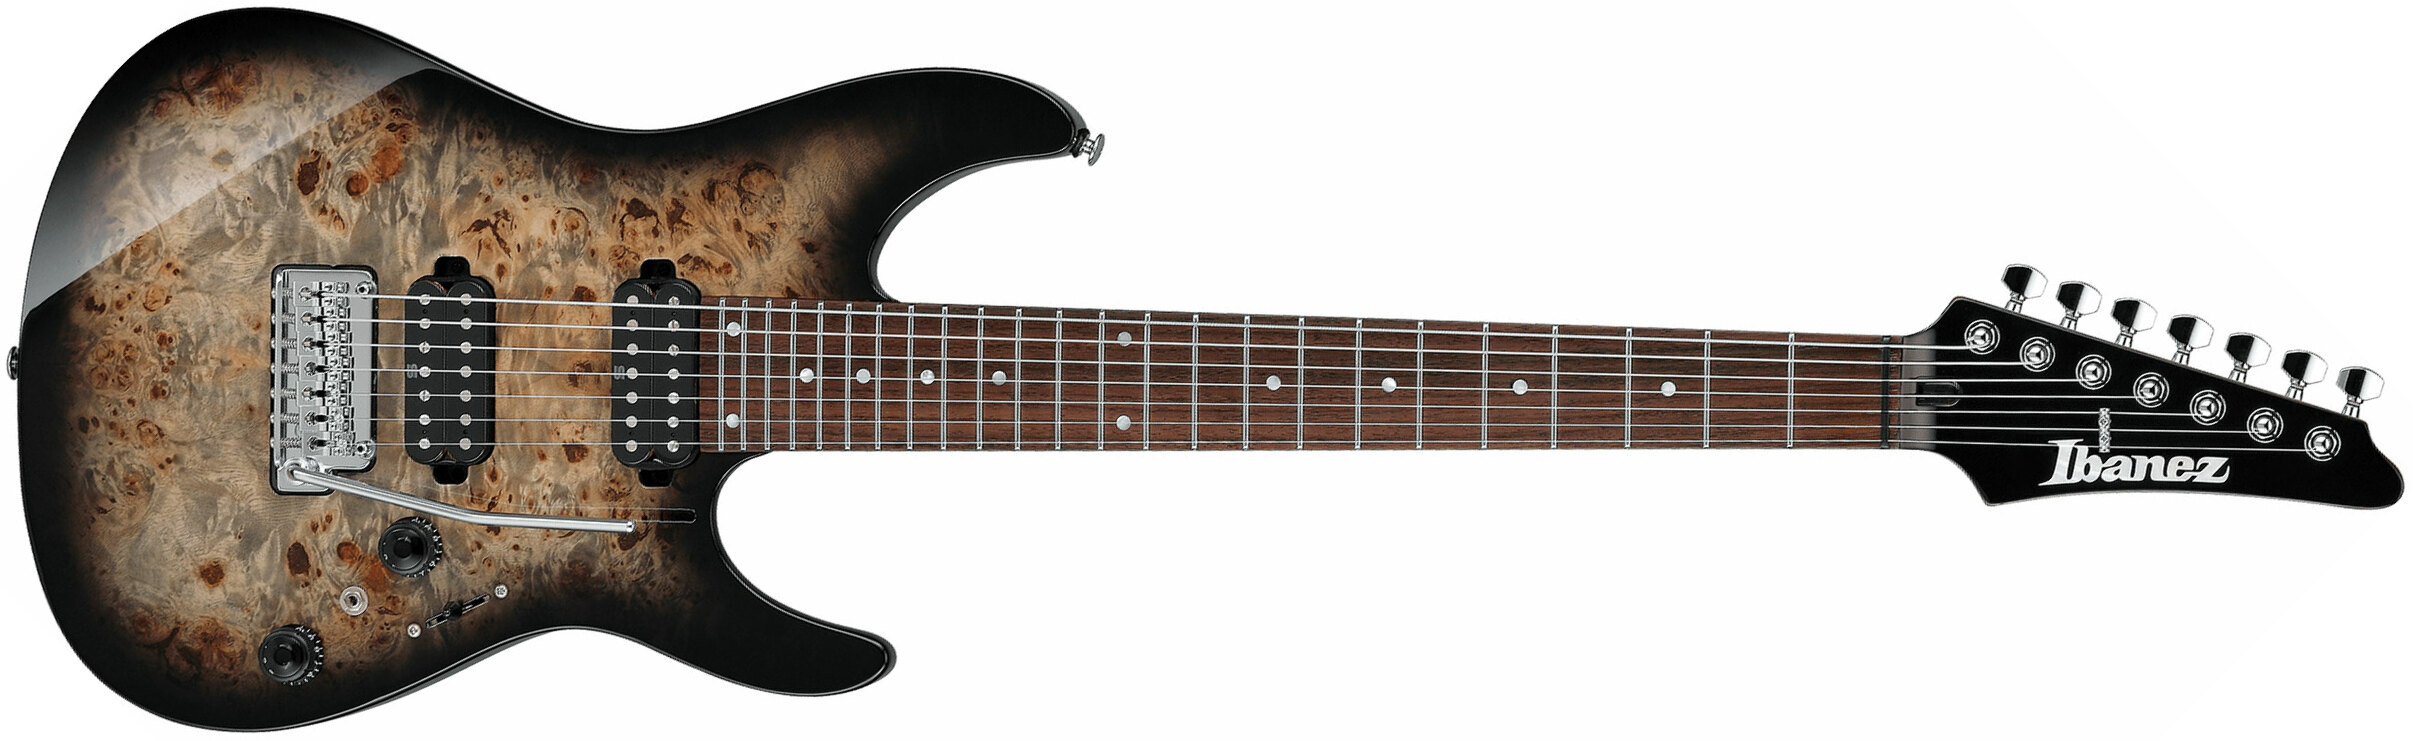 Ibanez Az427p1pb Ckb Premium 7c Hh Seymour Duncan Trem Rw - Charcoal Black Burst - 7 string electric guitar - Main picture